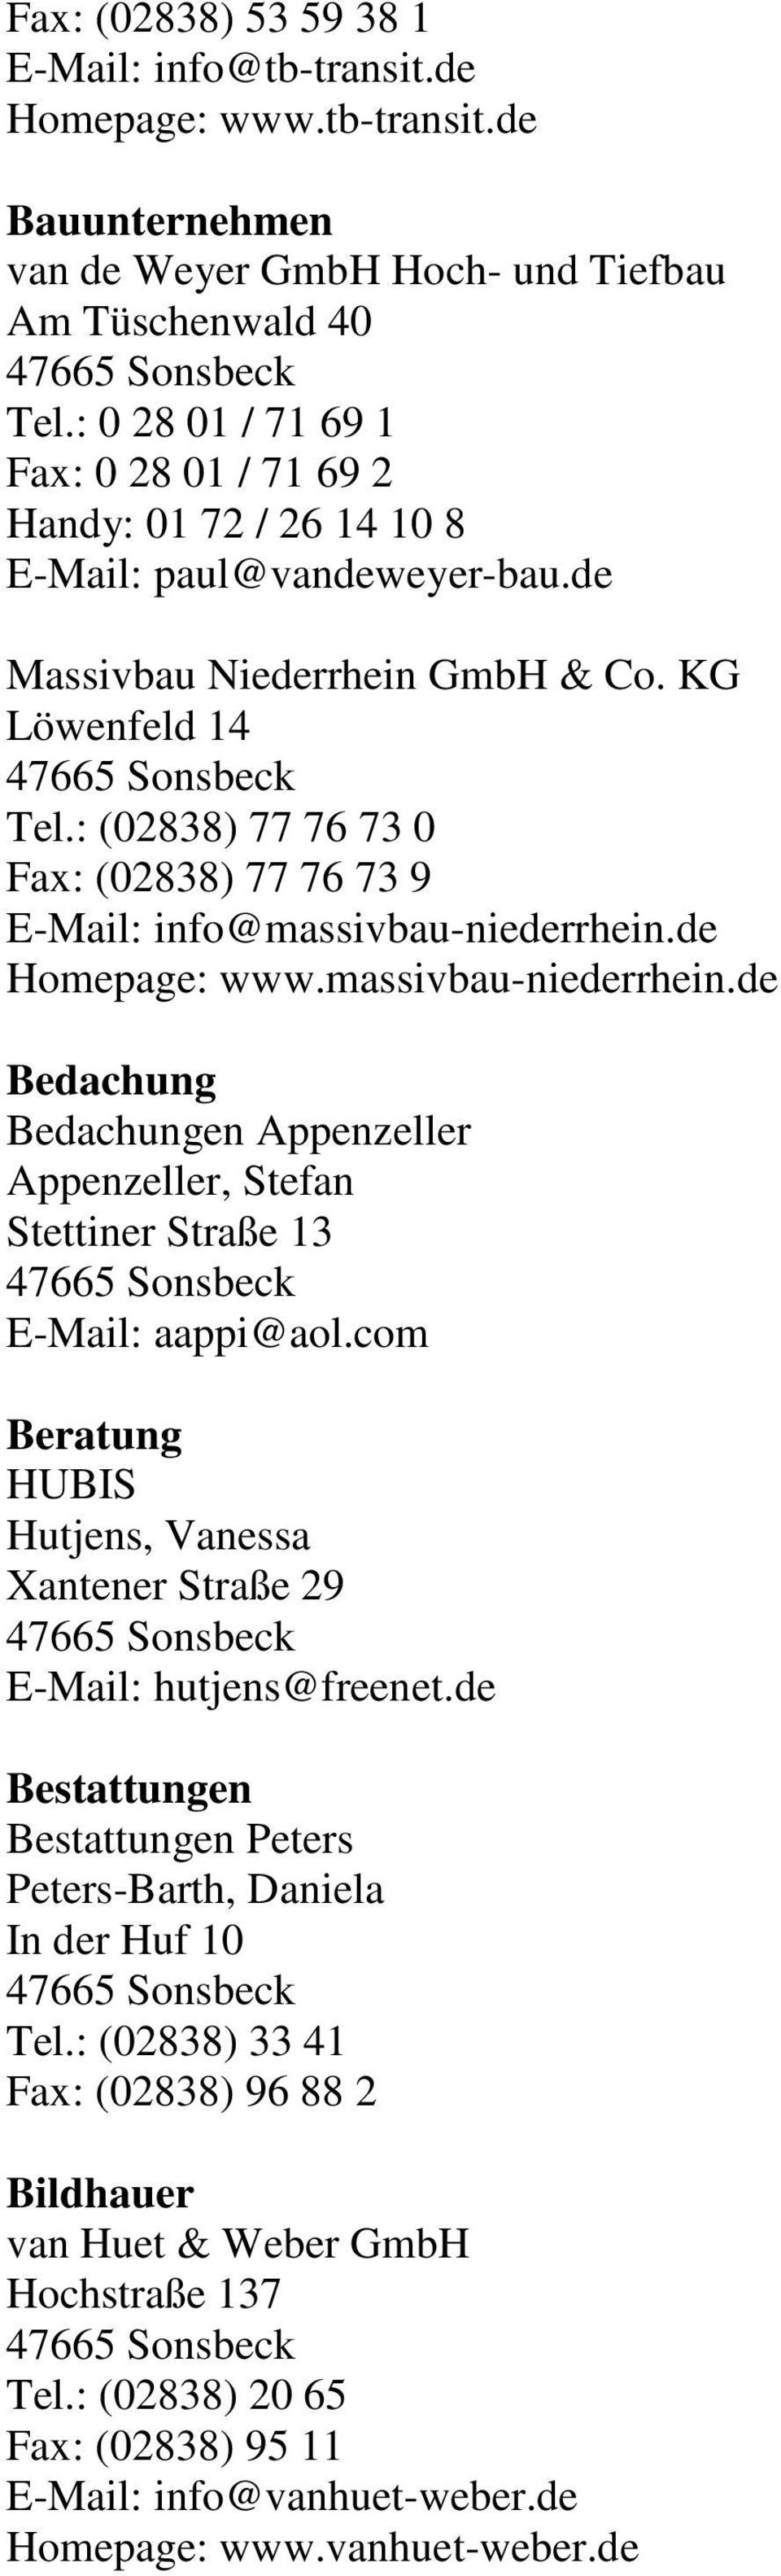 : (02838) 77 76 73 0 Fax: (02838) 77 76 73 9 E-Mail: info@massivbau-niederrhein.de Homepage: www.massivbau-niederrhein.de Bedachung Bedachungen Appenzeller Appenzeller, Stefan Stettiner Straße 13 E-Mail: aappi@aol.